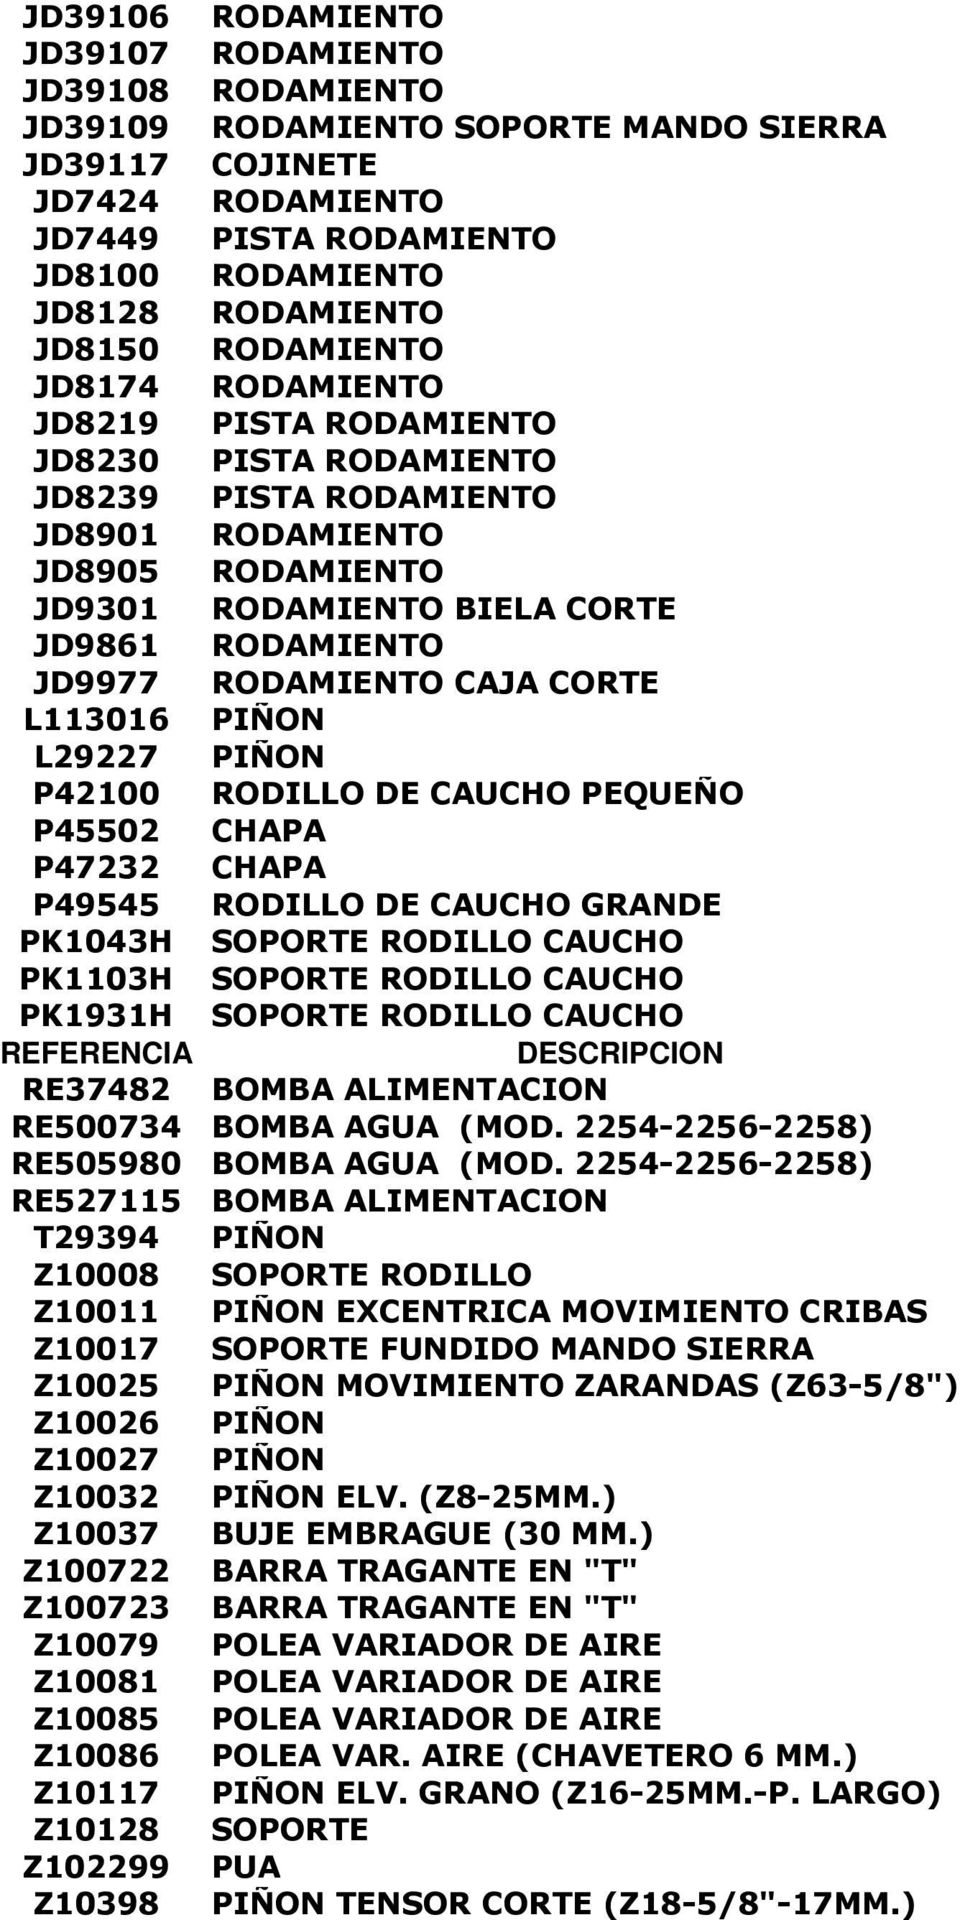 RODAMIENTO CAJA CORTE L113016 PIÑON L29227 PIÑON P42100 RODILLO DE CAUCHO PEQUEÑO P45502 CHAPA P47232 CHAPA P49545 RODILLO DE CAUCHO GRANDE PK1043H SOPORTE RODILLO CAUCHO PK1103H SOPORTE RODILLO